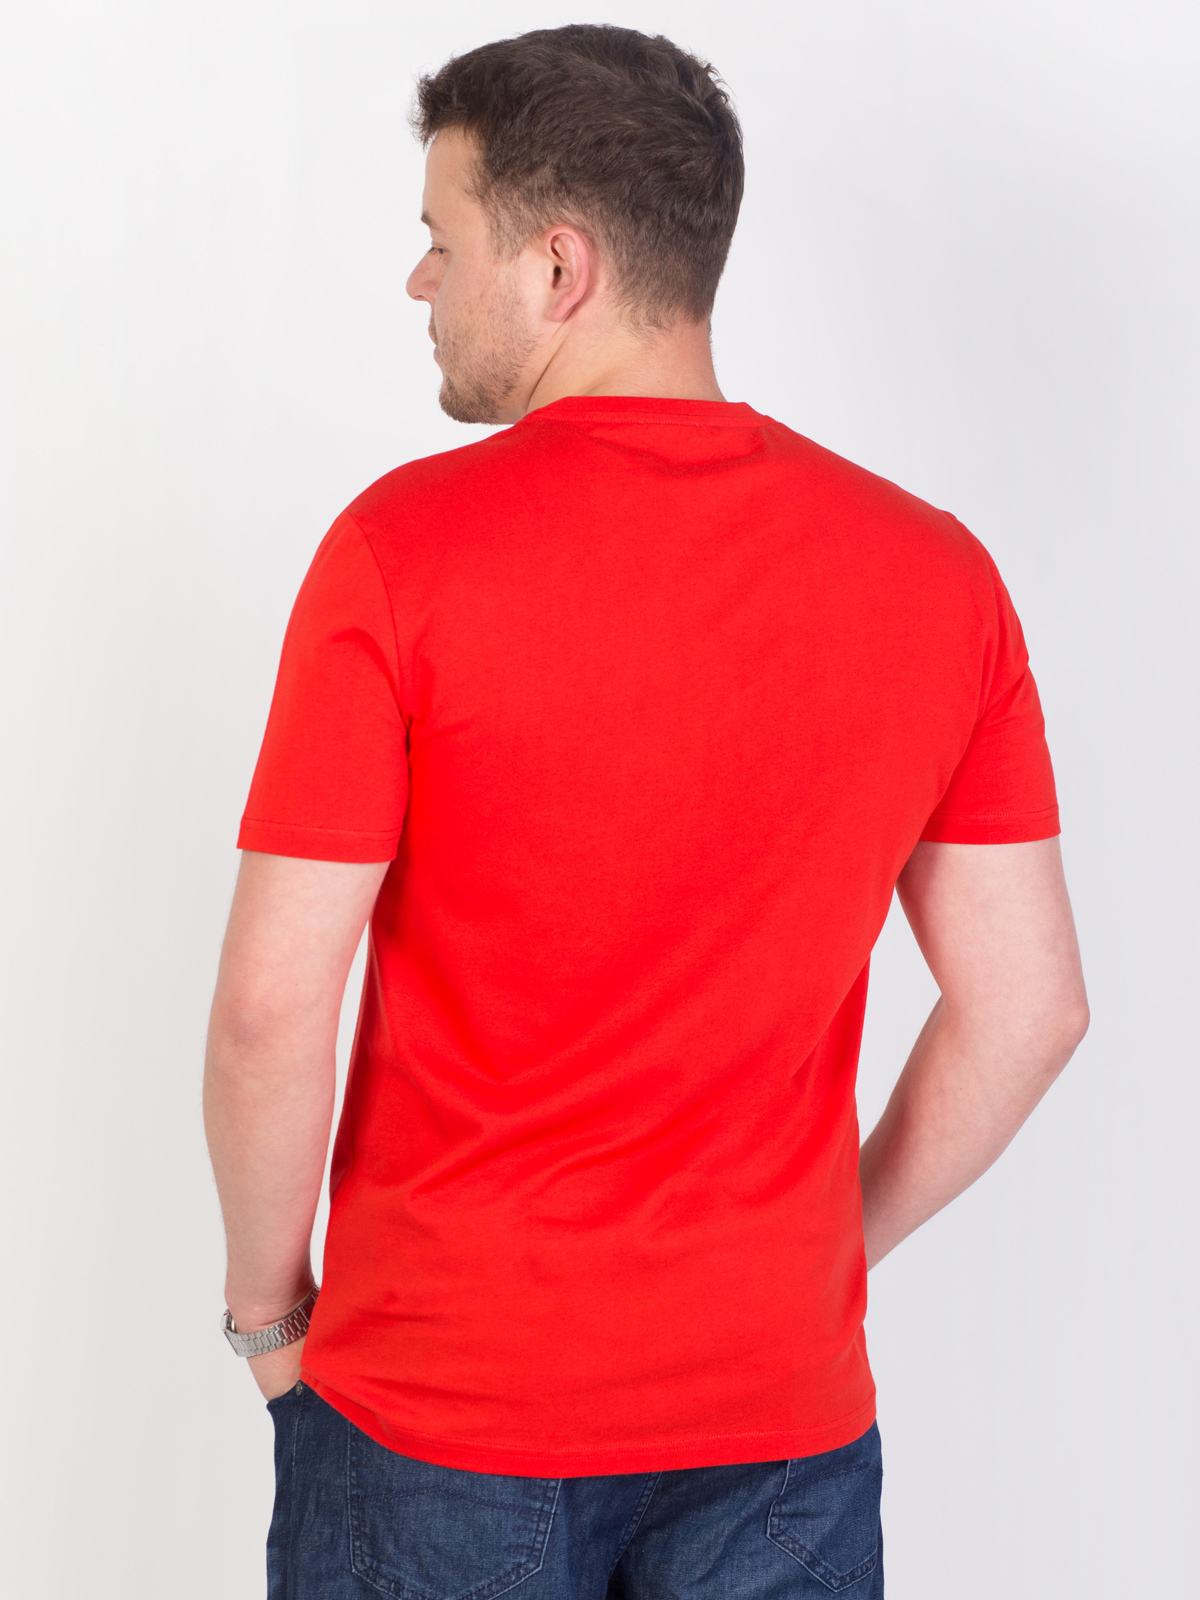 Κόκκινο μπλουζάκι με μπλε στάμπα - 96438 € 16.31 img4